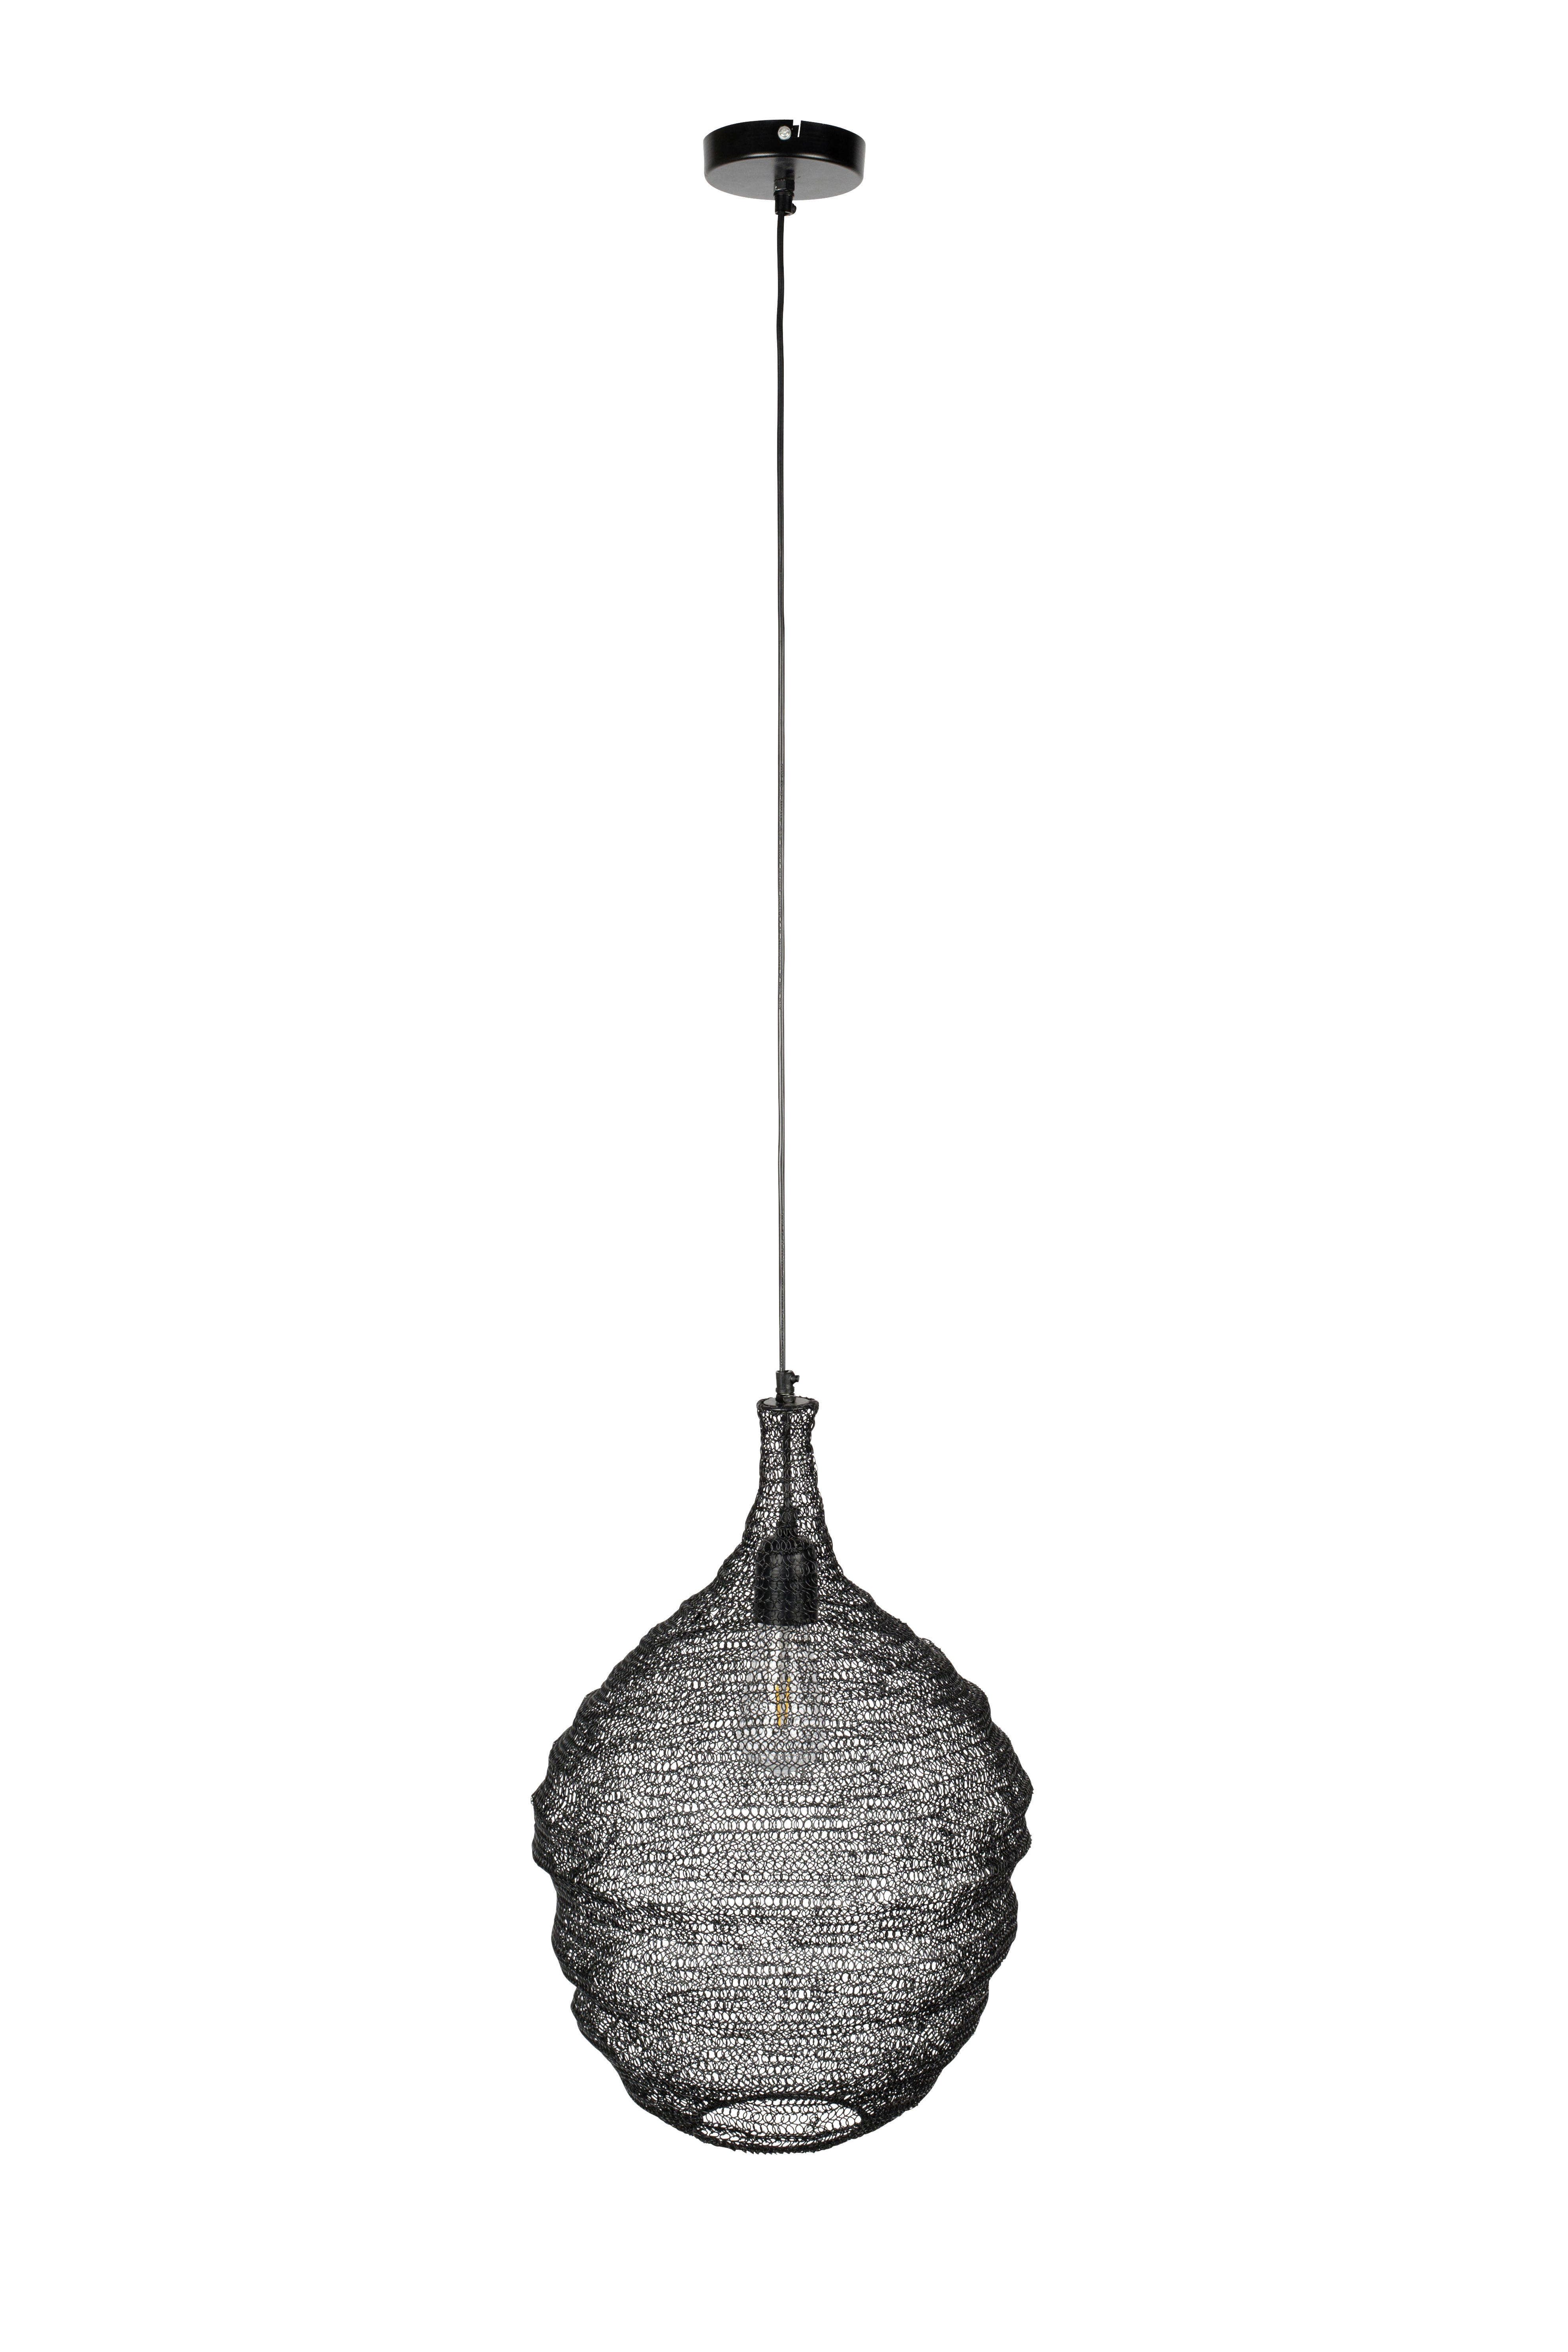 HÄNGELEUCHTE LENA  - Schwarz, Design, Metall (37/155cm) - Zuiver